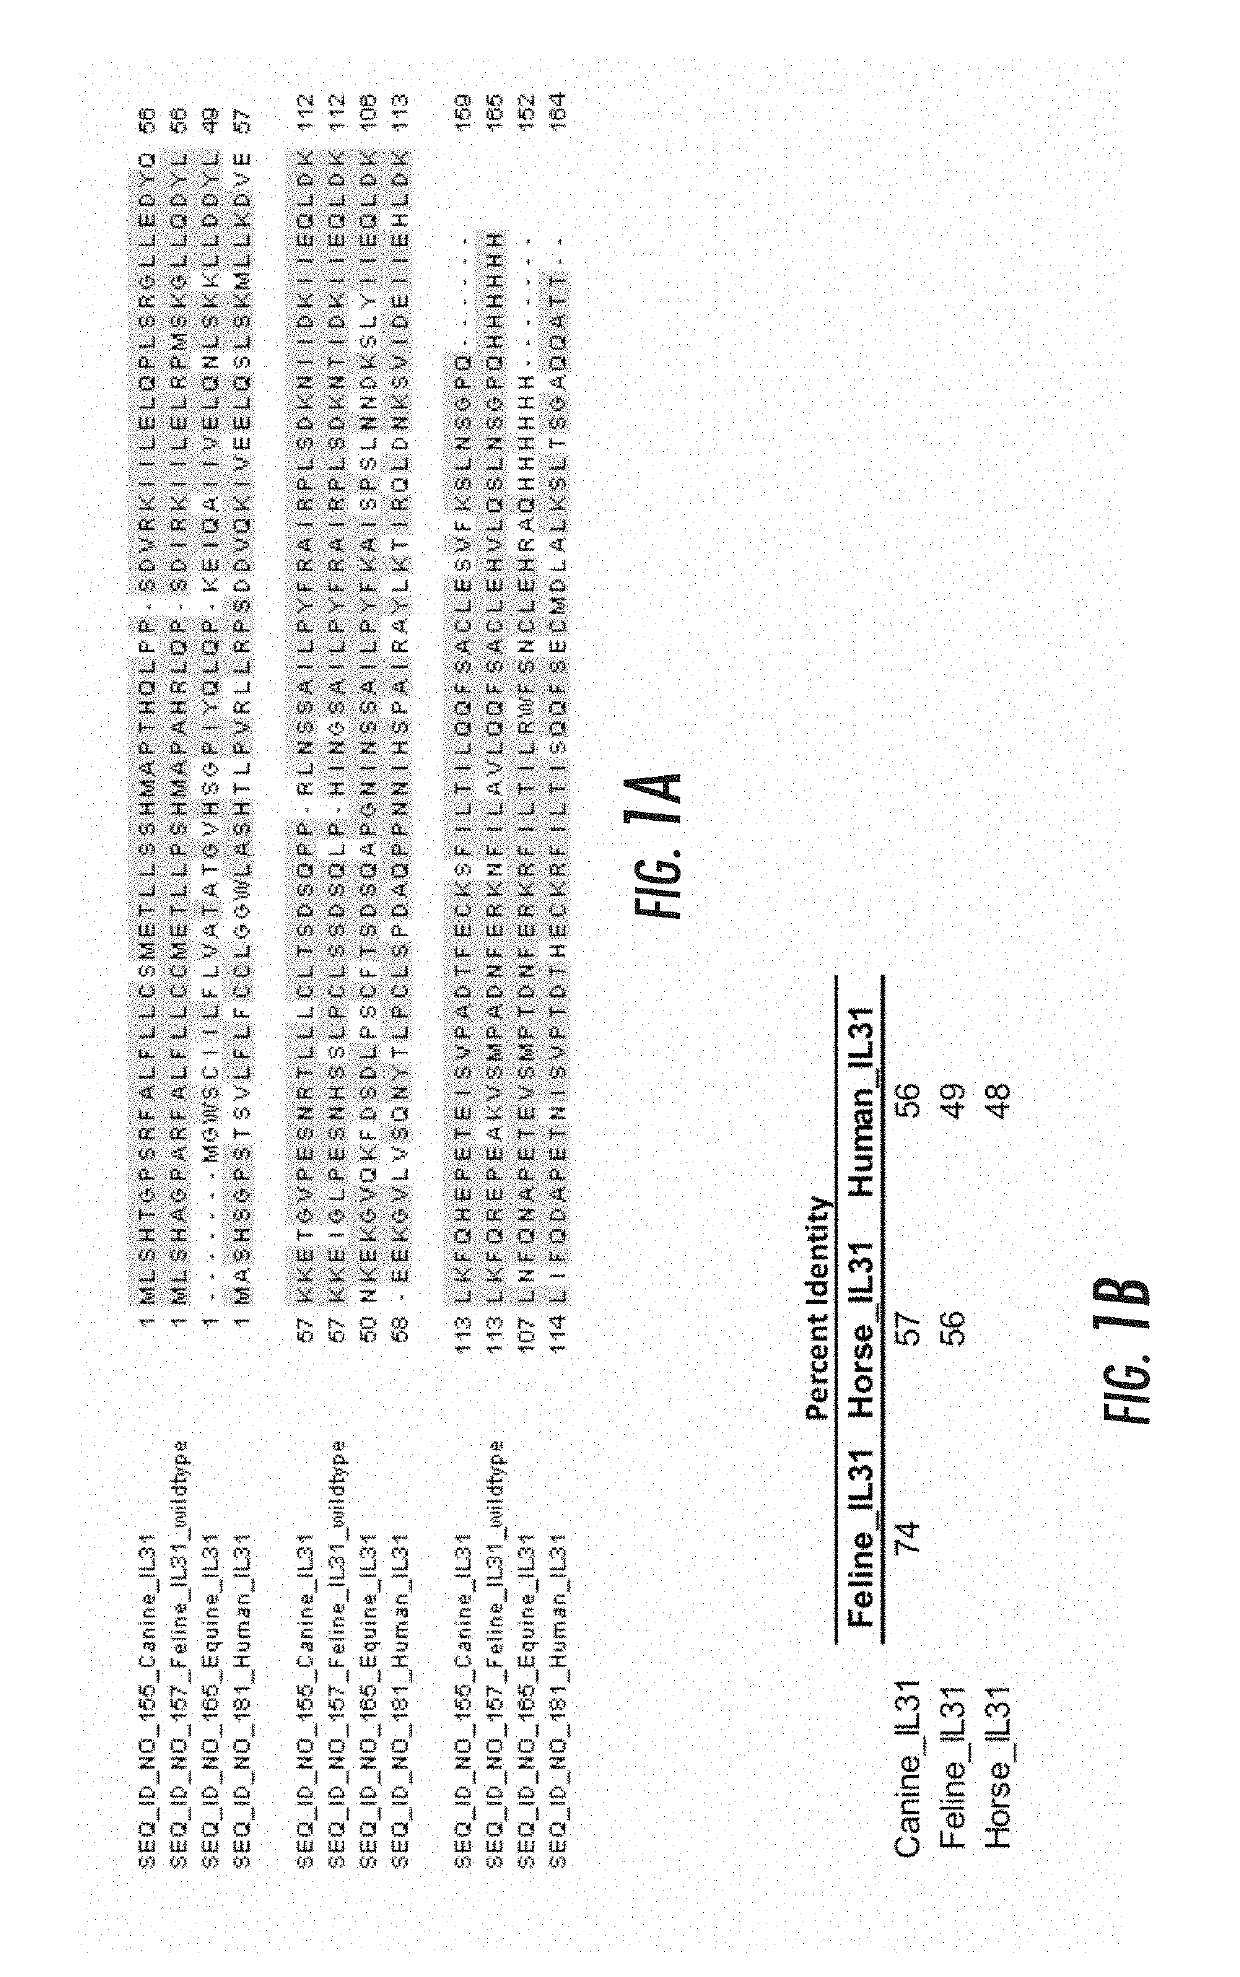 Interleukin-31 monoclonal antibodies for veterinary use